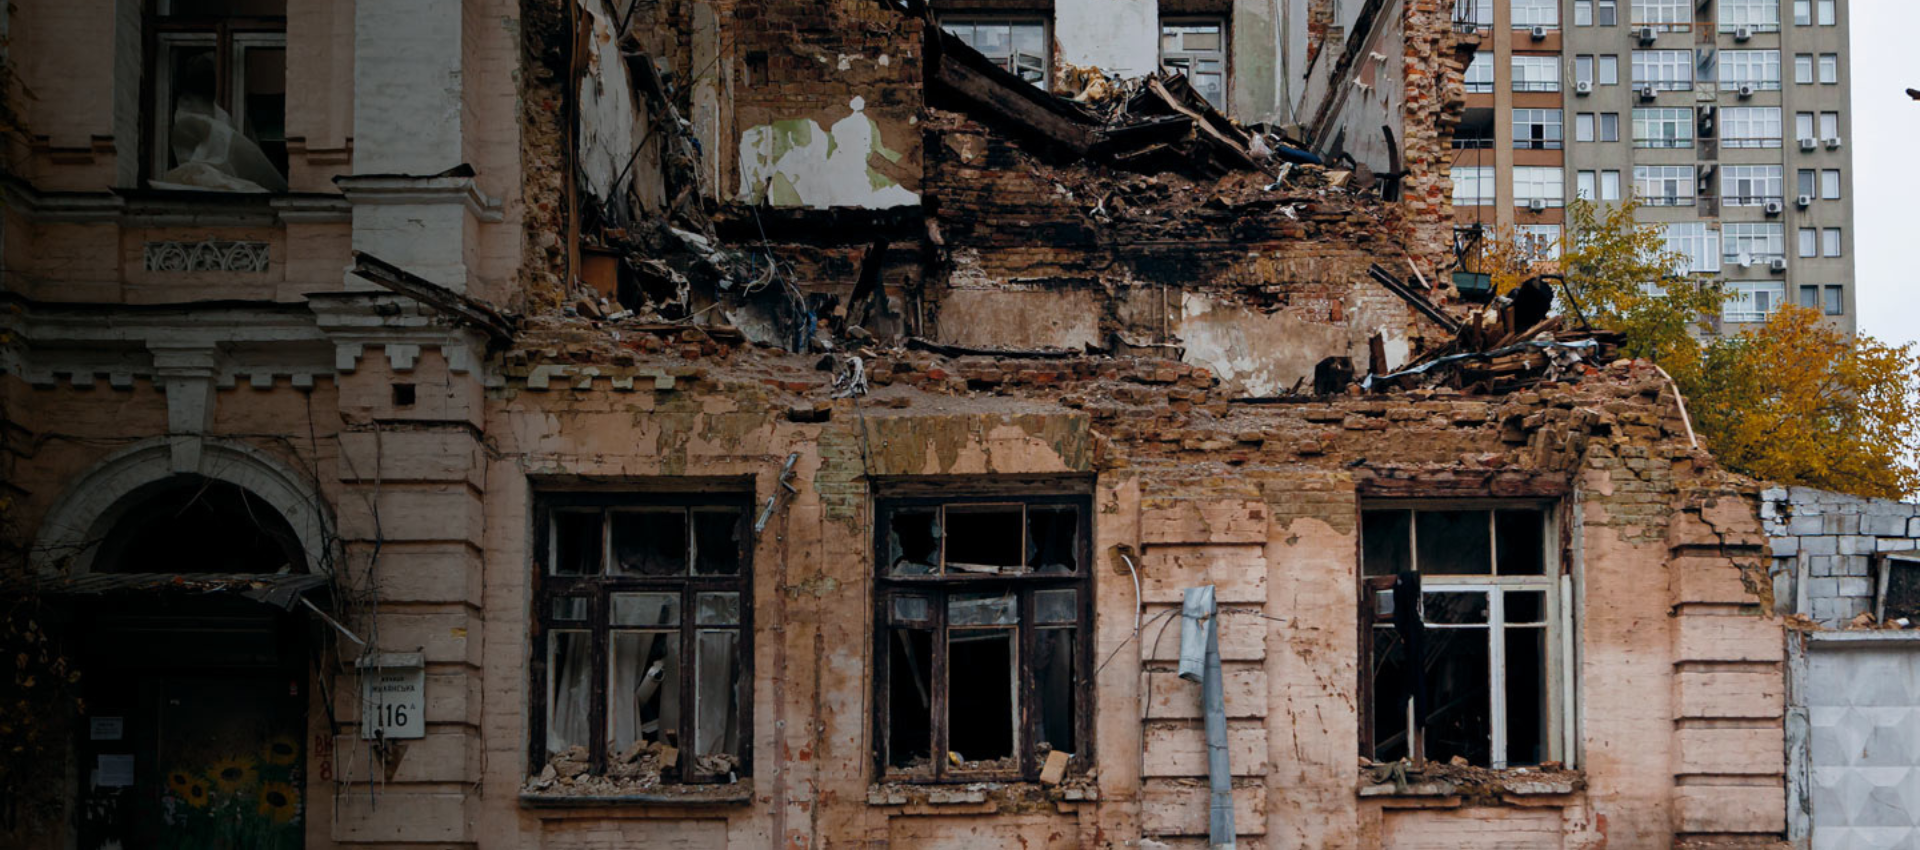 zu sehen ist ein zerstörtes Haus in der Ukraine